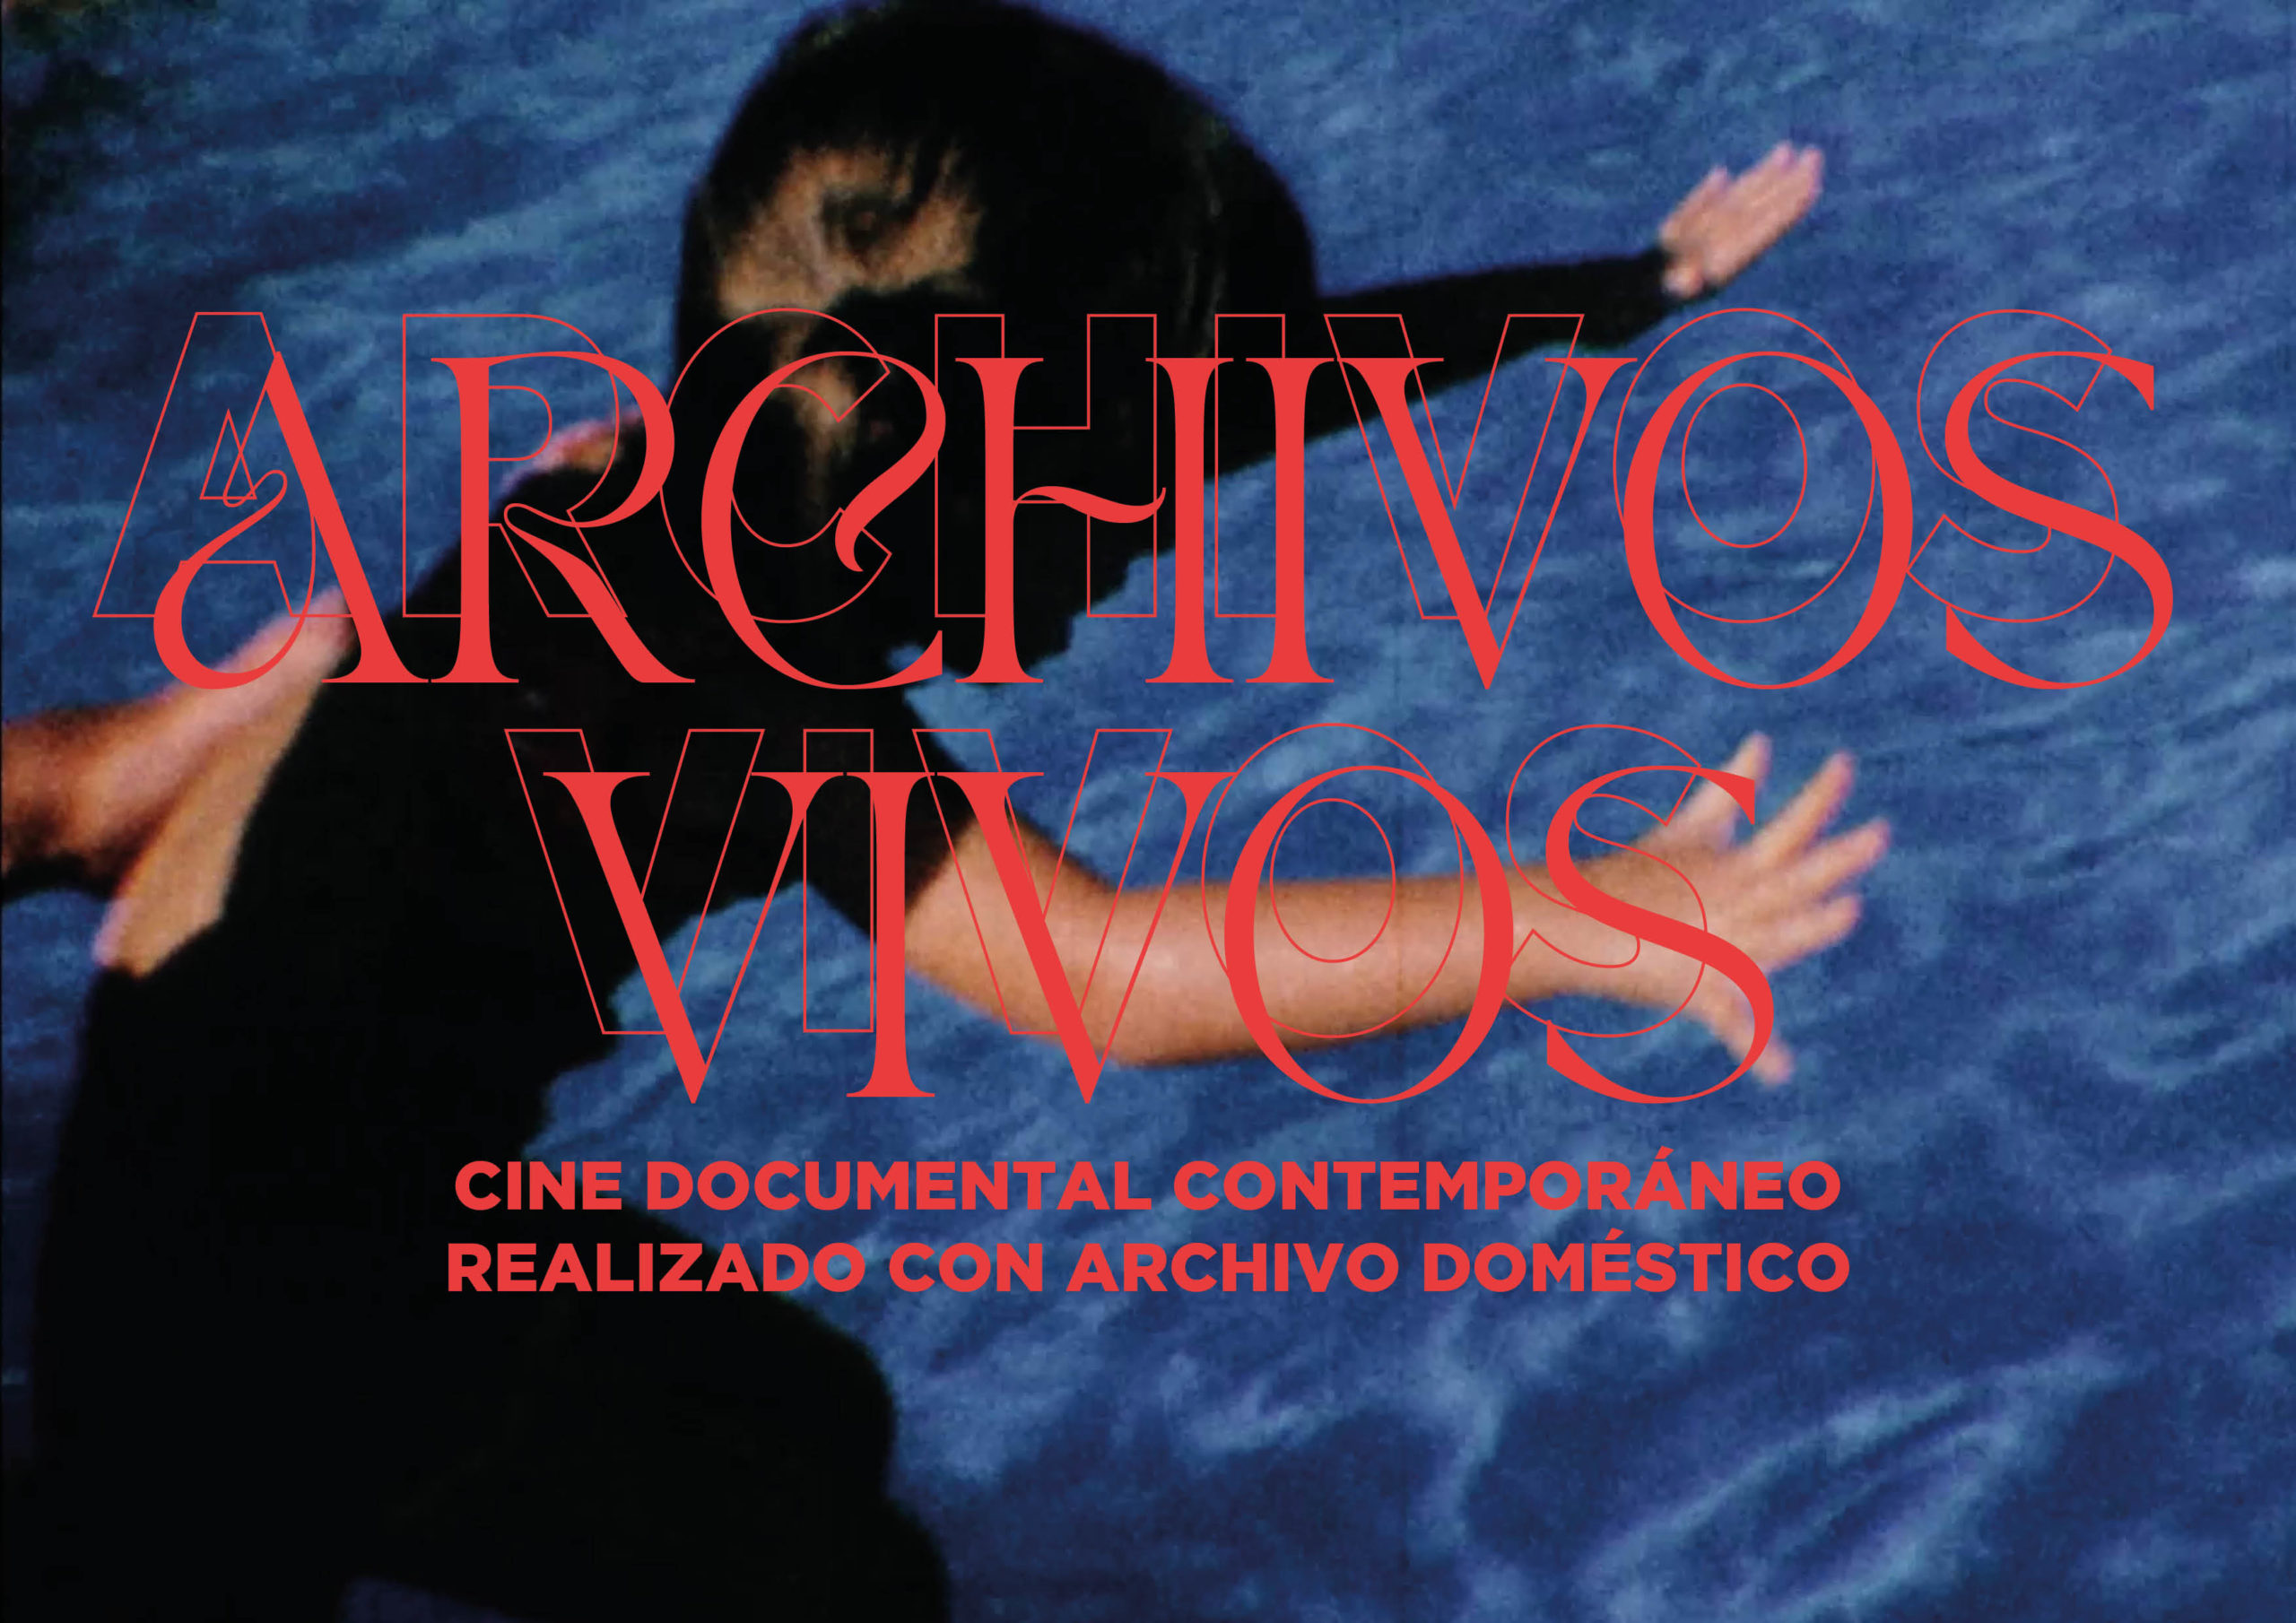 ARCHIVOS-VIVOS-CARTEL-1-scaled